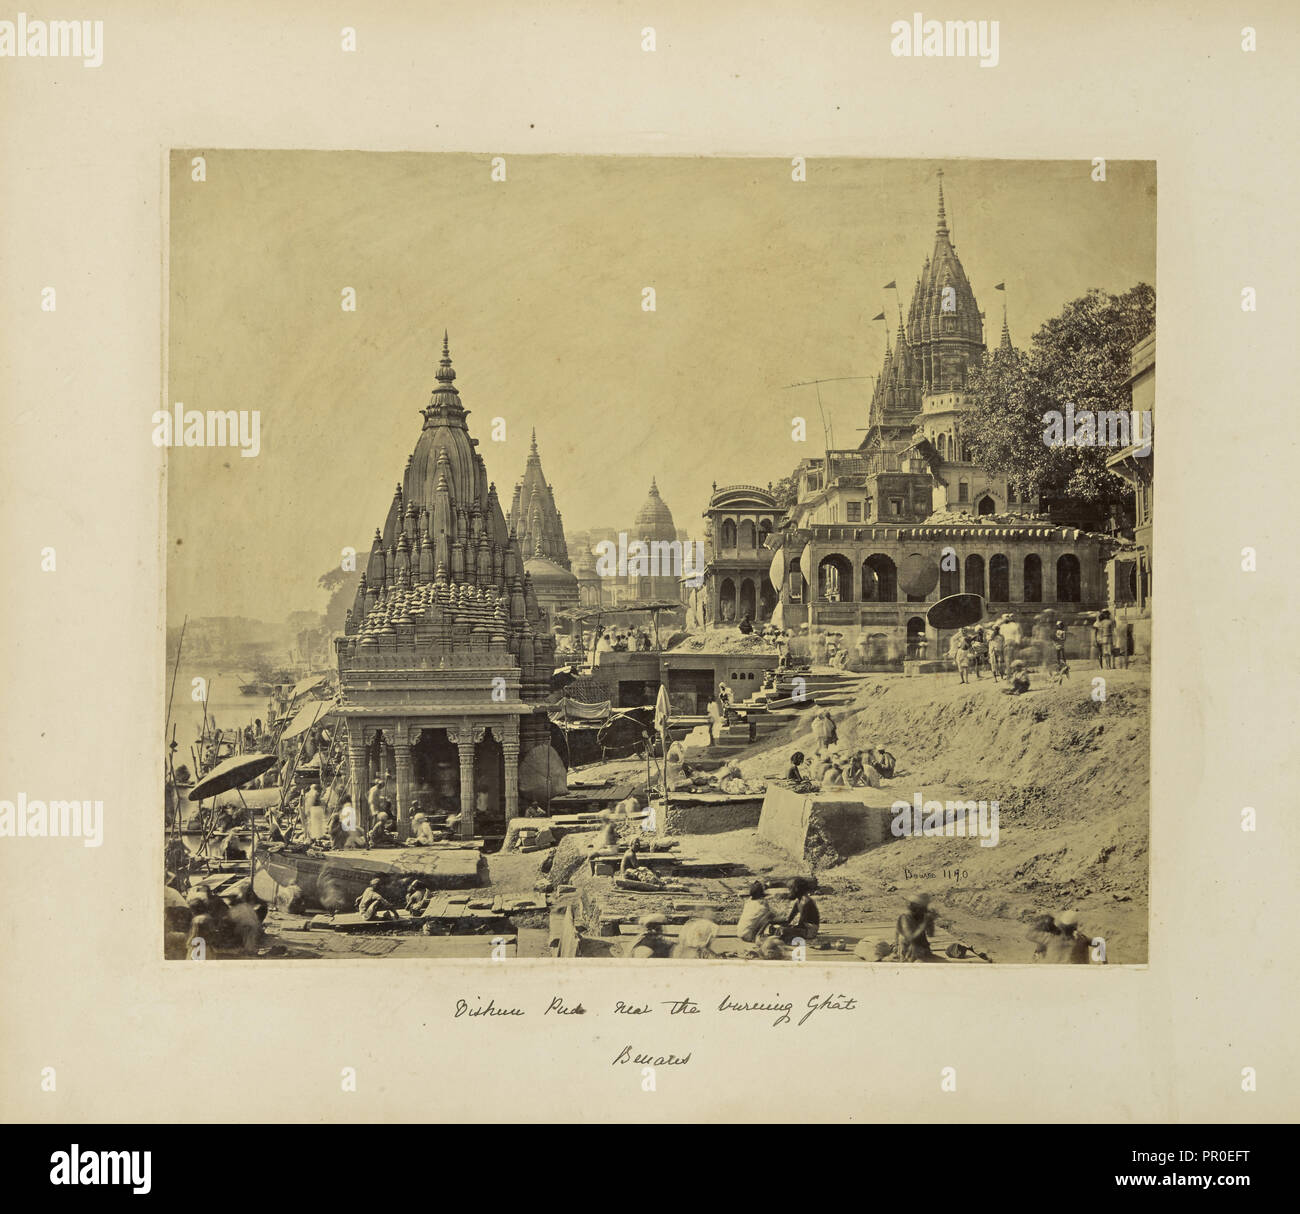 Benares; Vishnu Pud und andere Tempel in der Nähe des brennenden Ghat; Samuel Bourne, Englisch, 1834-1912, Benares, Uttar Pradesh, Indien Stockfoto